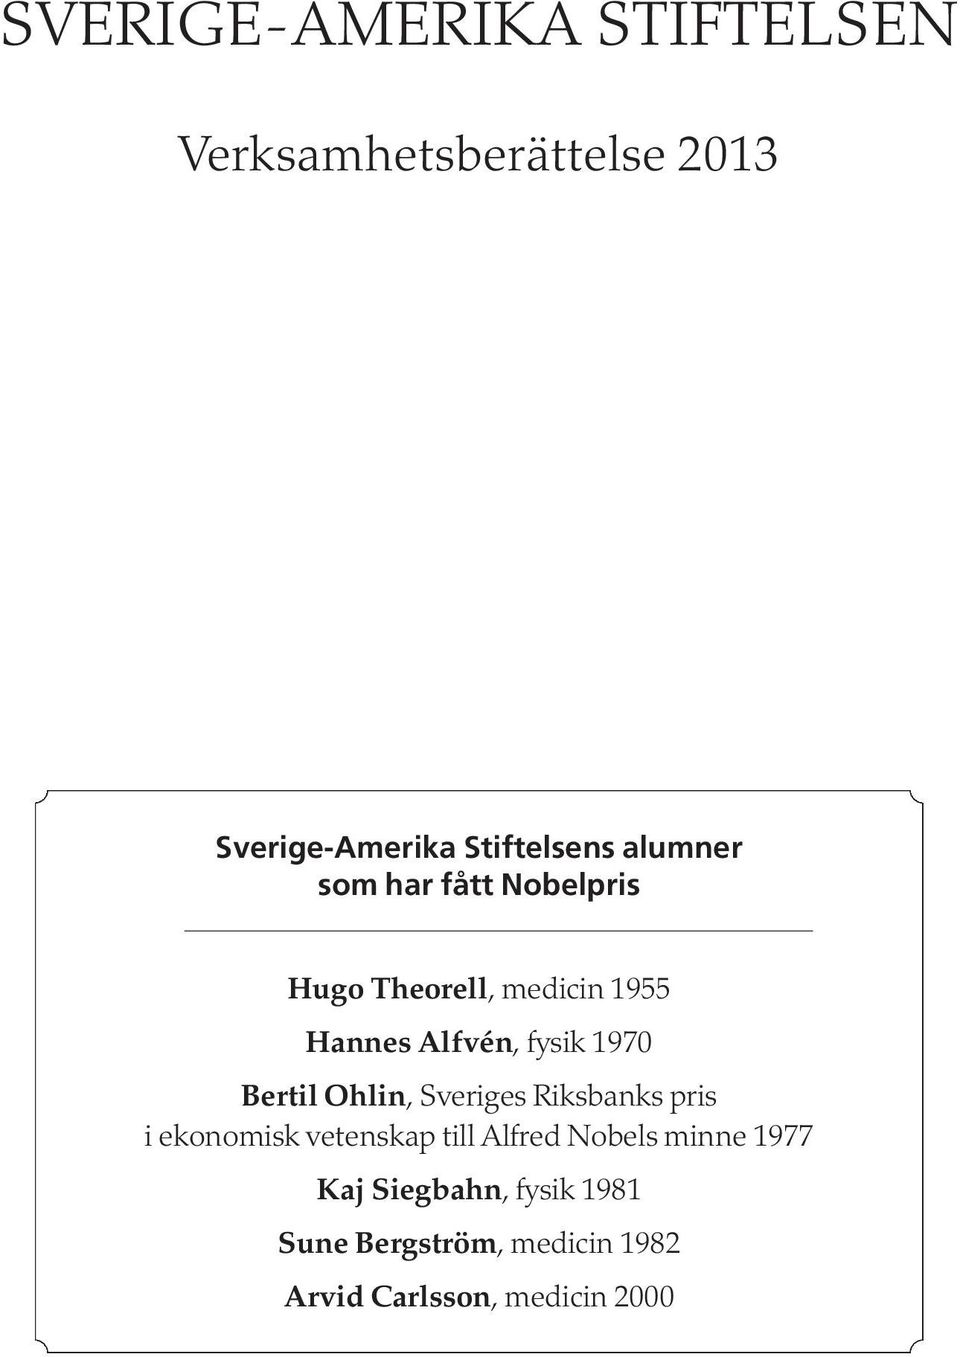 Bertil Ohlin, Sveriges Riksbanks pris i ekonomisk vetenskap till Alfred Nobels minne